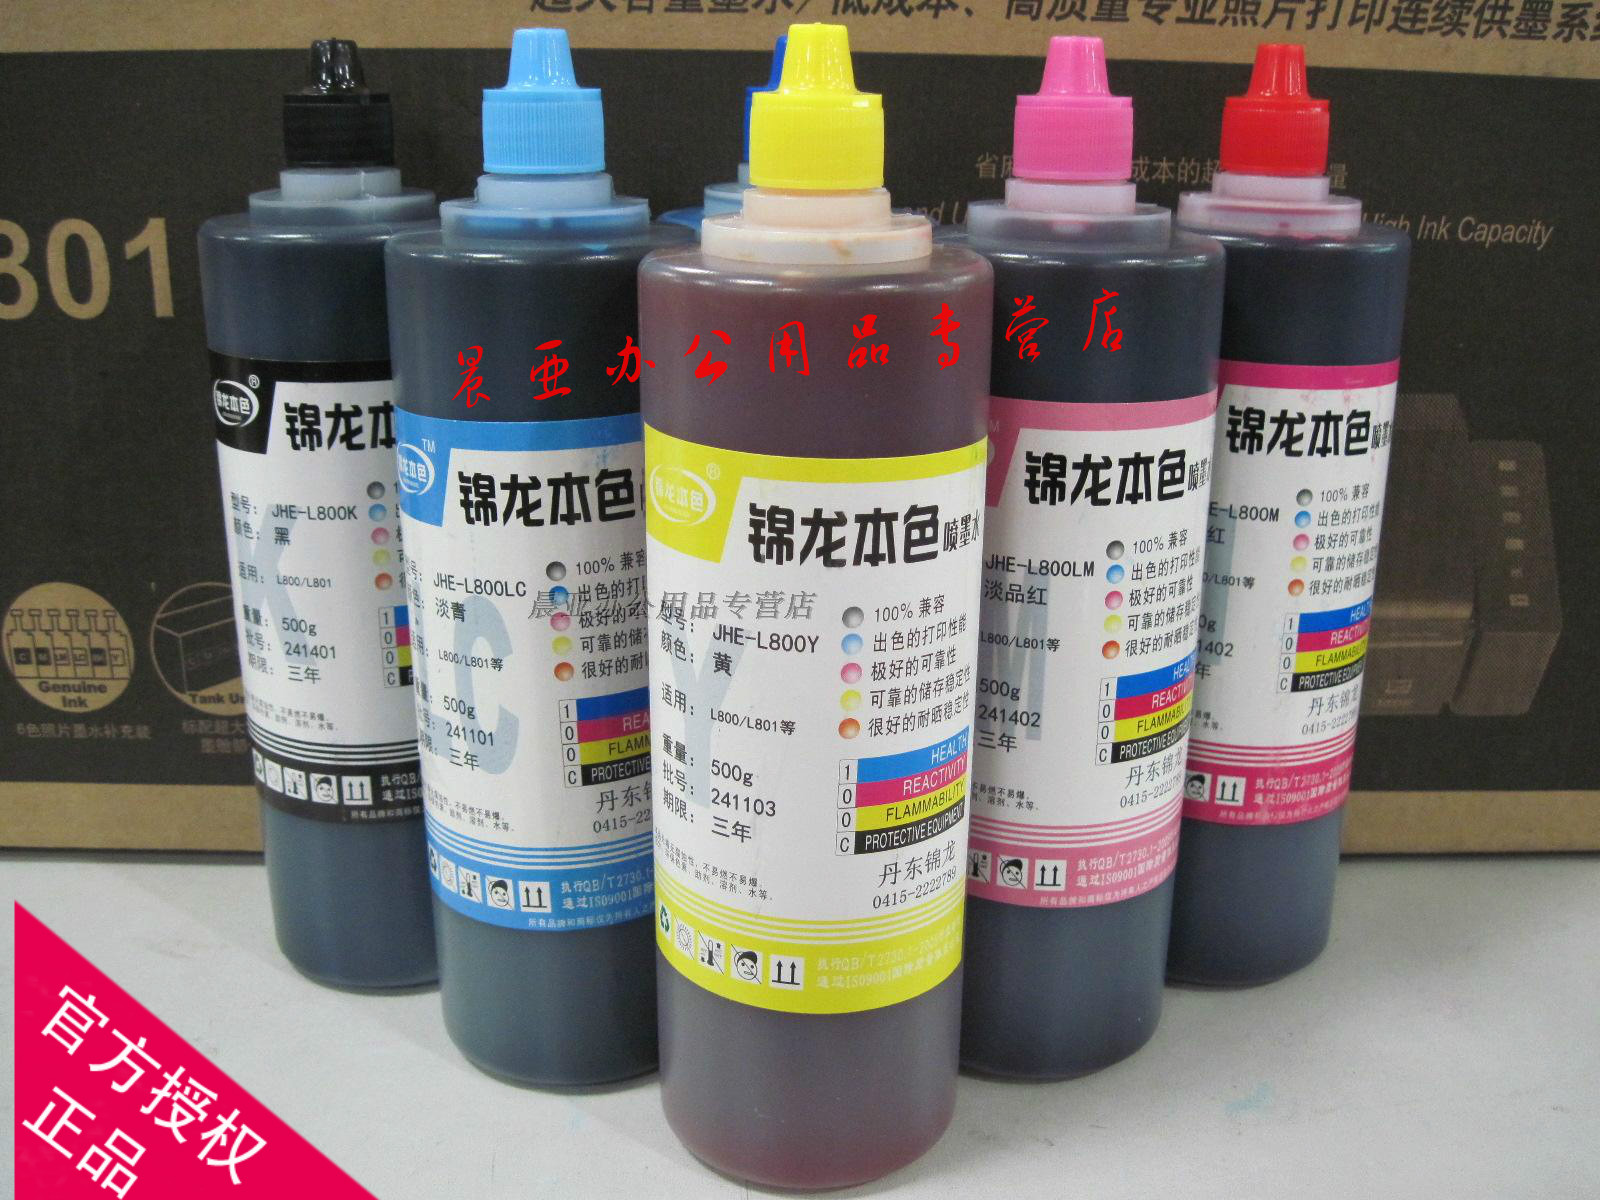 锦龙本色专用墨水适用于爱普生L800 801 L805 1800 1300打印机